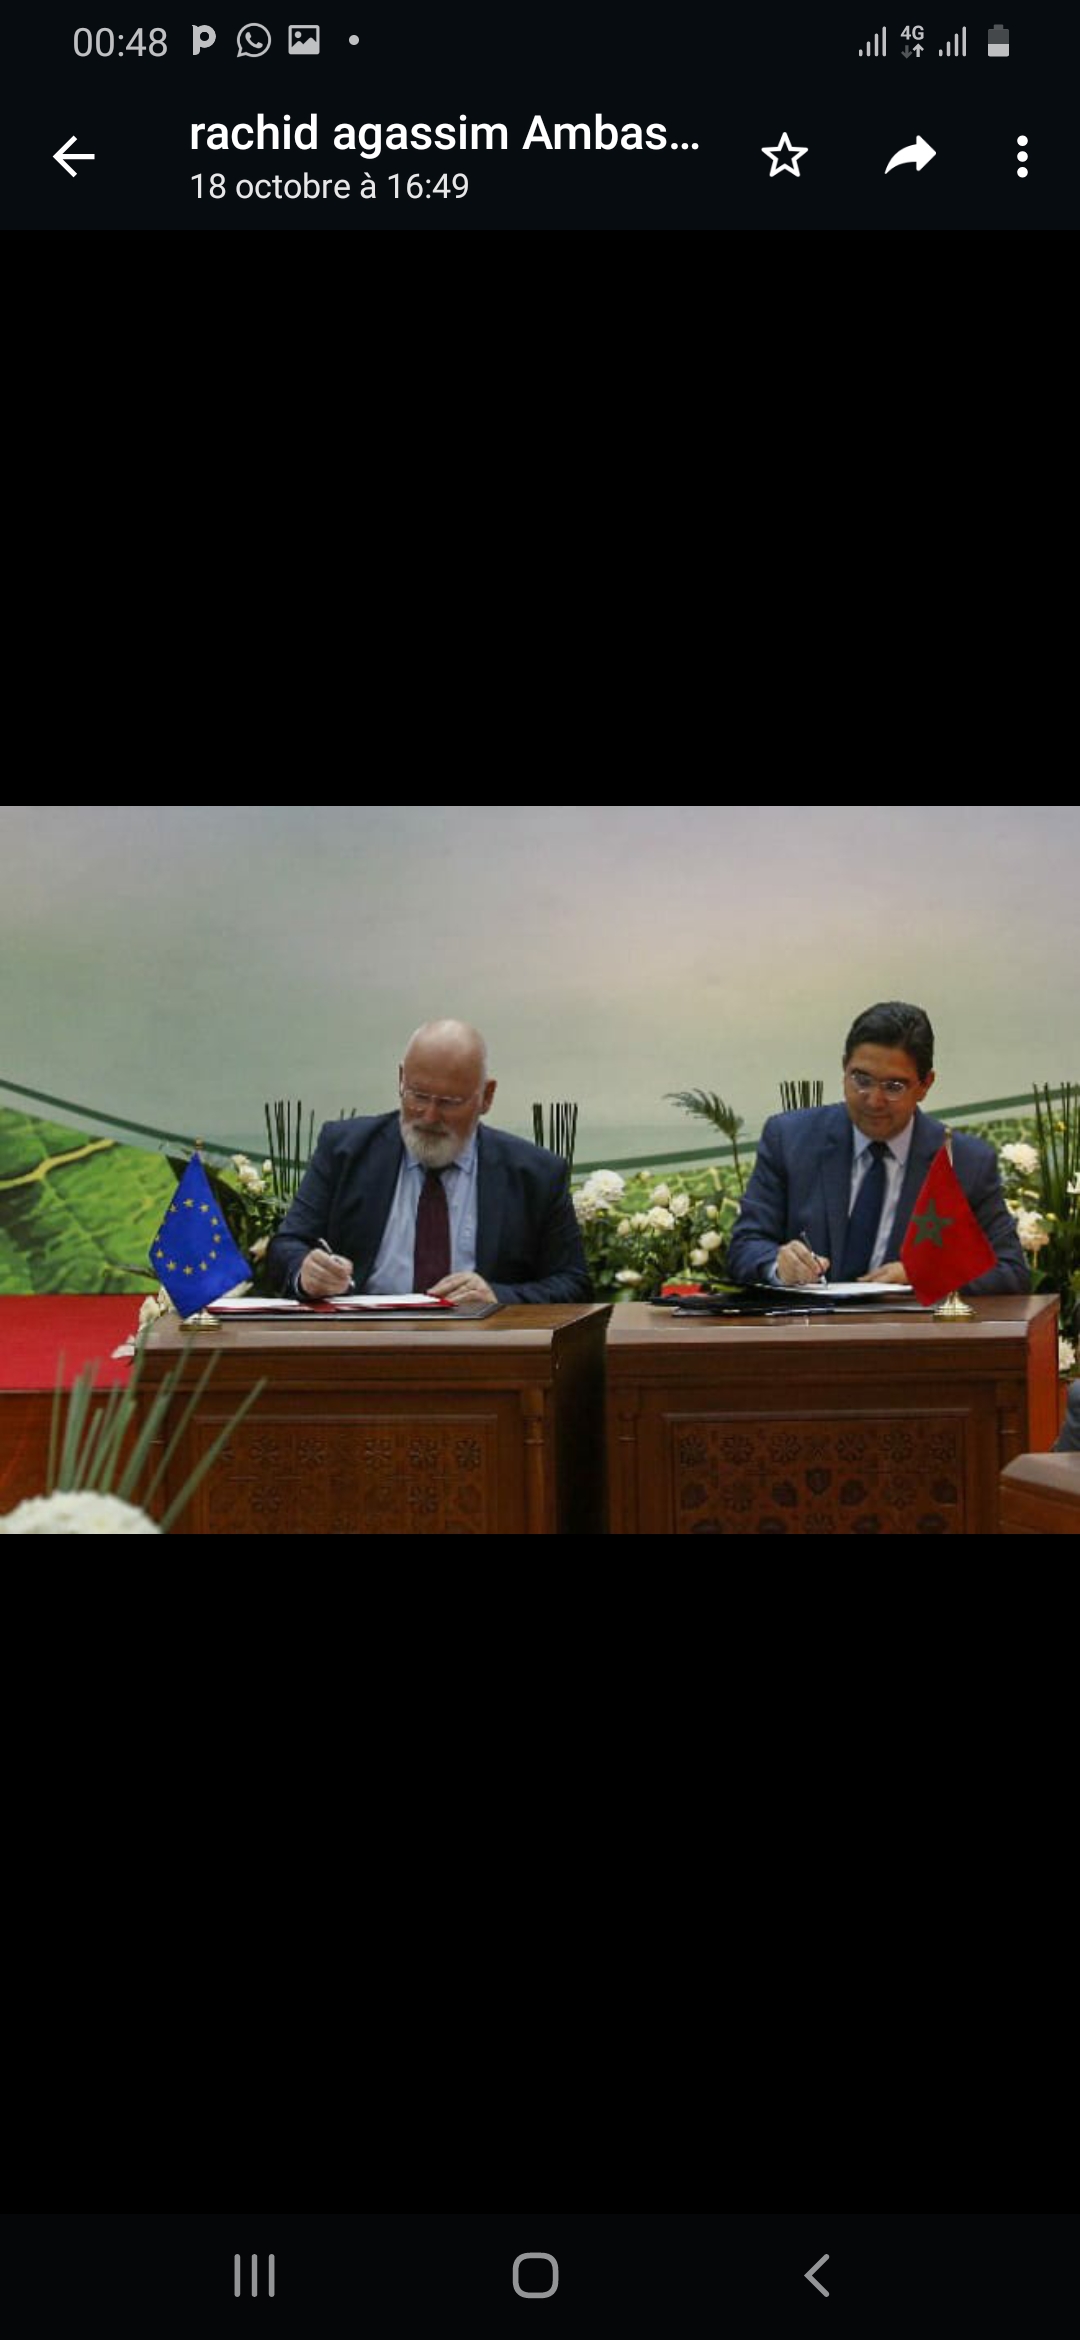 Le Maroc premier pays à pactiser avec l’UE pour un Partenariat vert